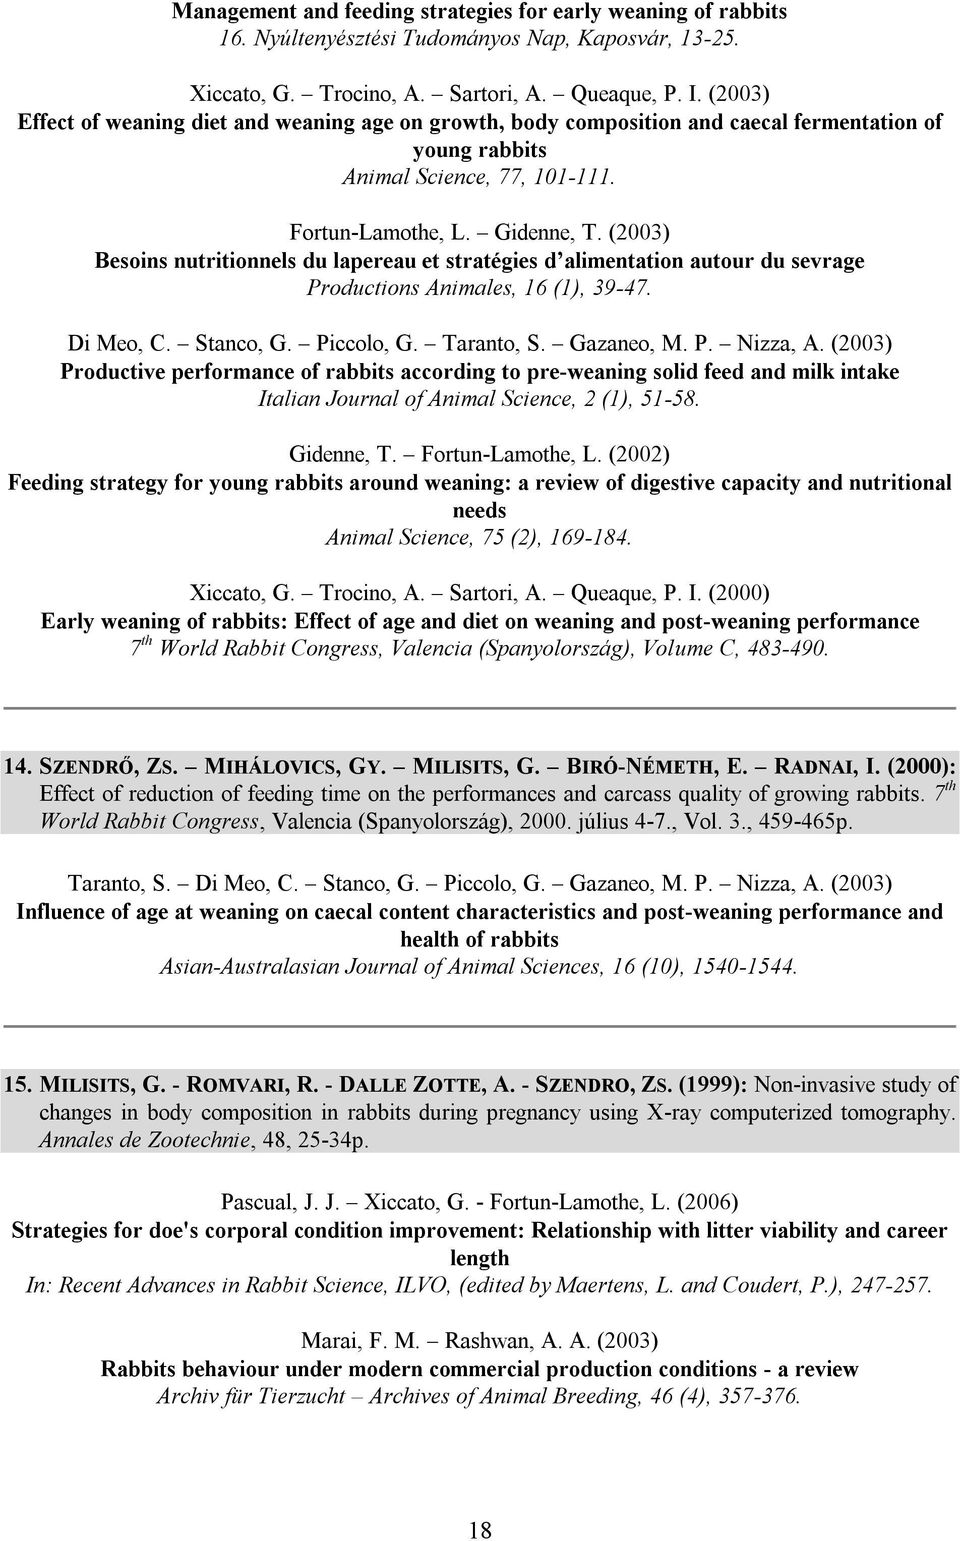 (2003) Besoins nutritionnels du lapereau et stratégies d alimentation autour du sevrage Productions Animales, 16 (1), 39-47. Di Meo, C. Stanco, G. Piccolo, G. Taranto, S. Gazaneo, M. P. Nizza, A.